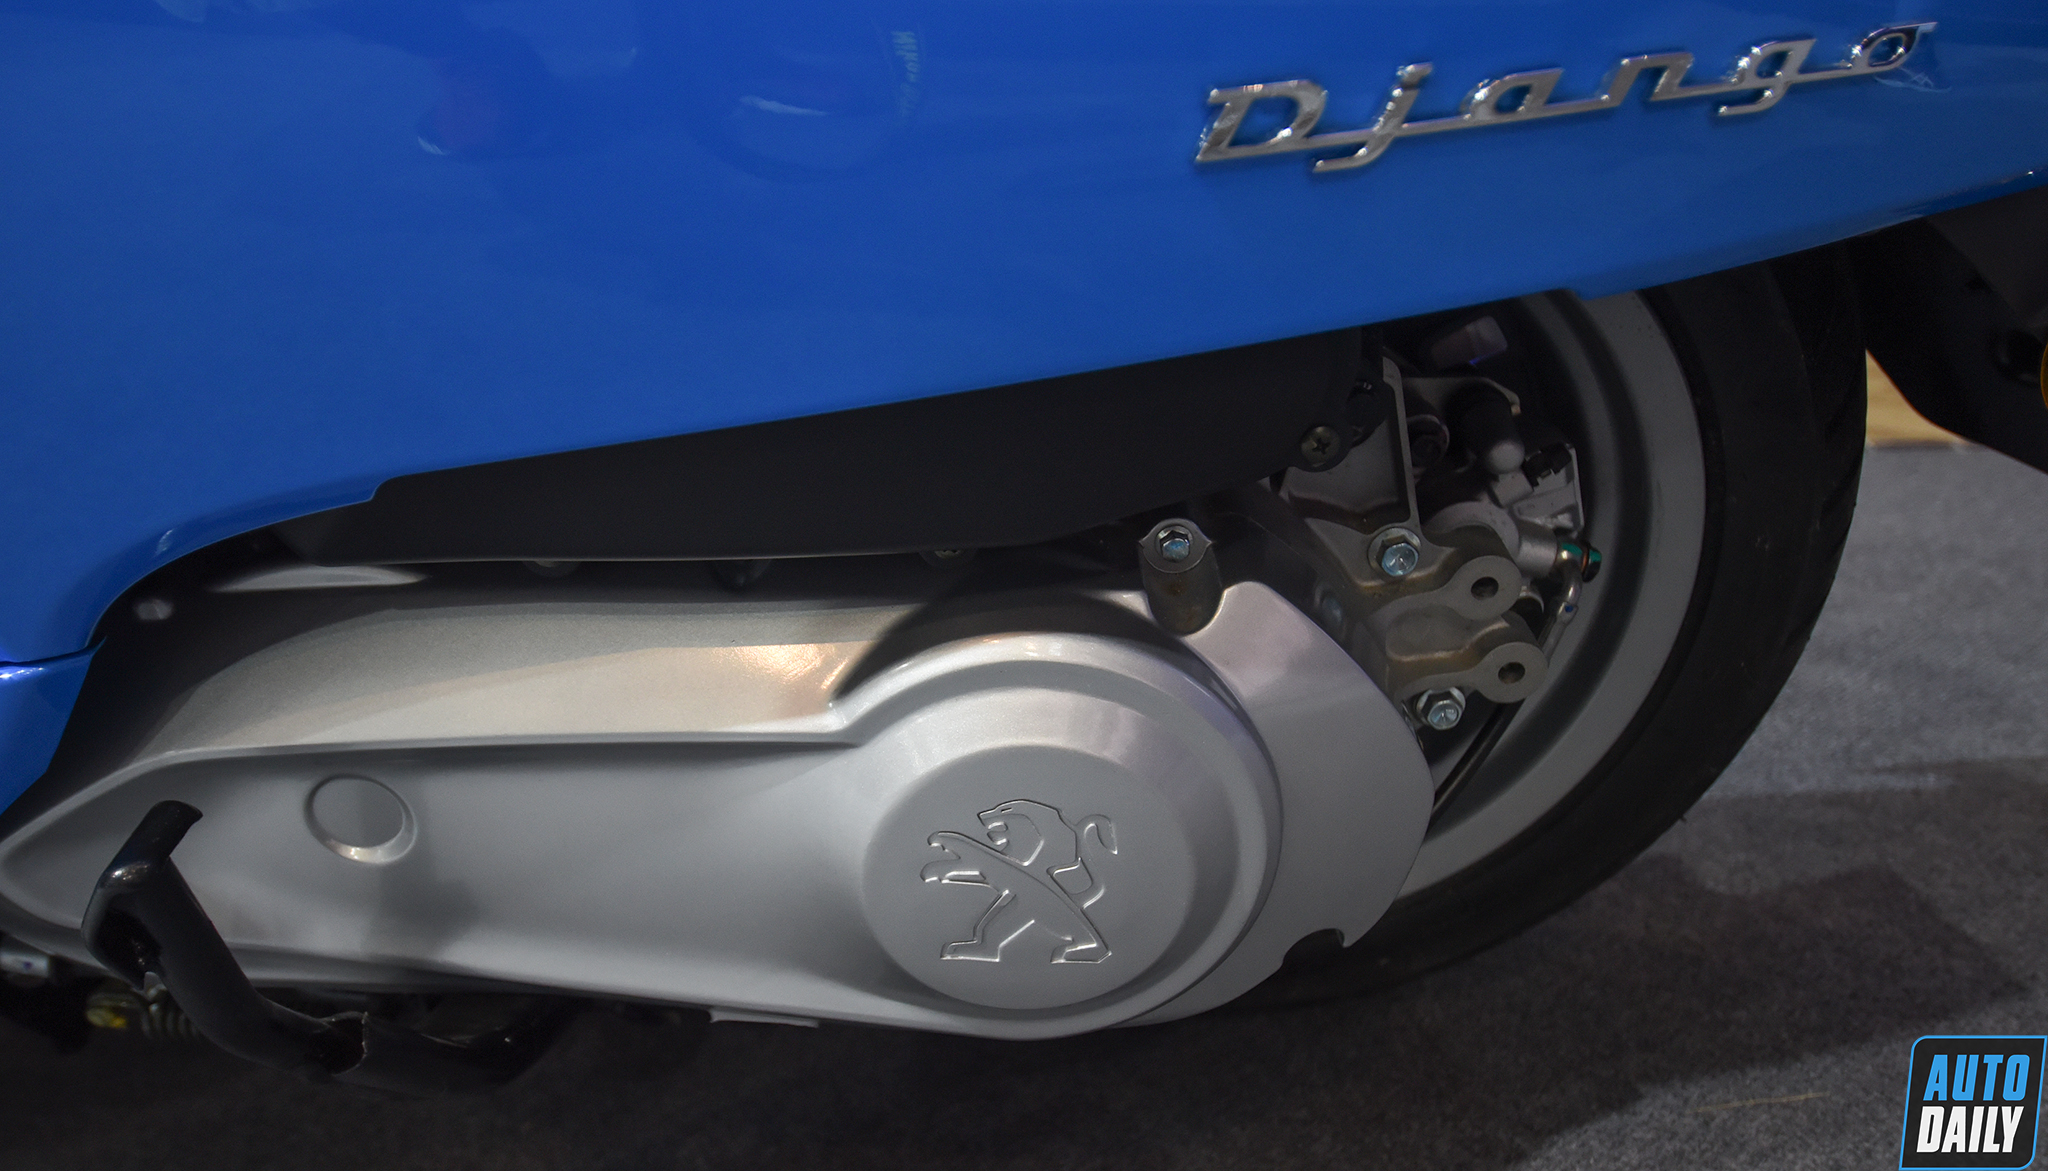 Thaco ra mắt xe máy Peugeot Django 125 giá 68 triệu đồng dsc-8629-copy.jpg